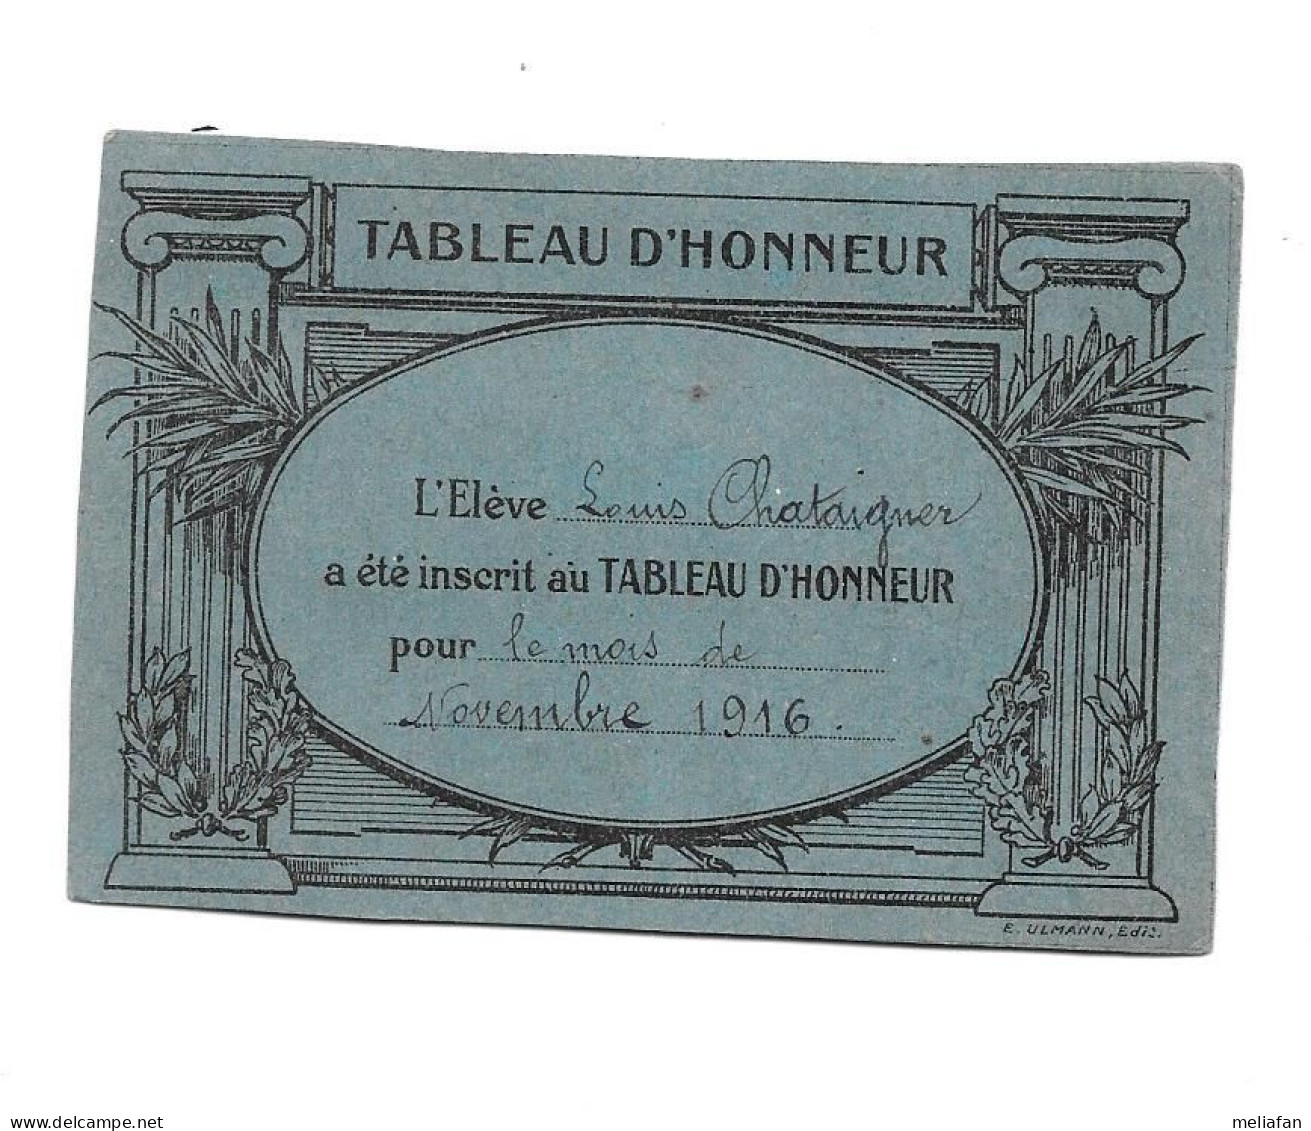 KB1283 - BILLET DE TABLEAU D'HONNEUR - Diplomi E Pagelle